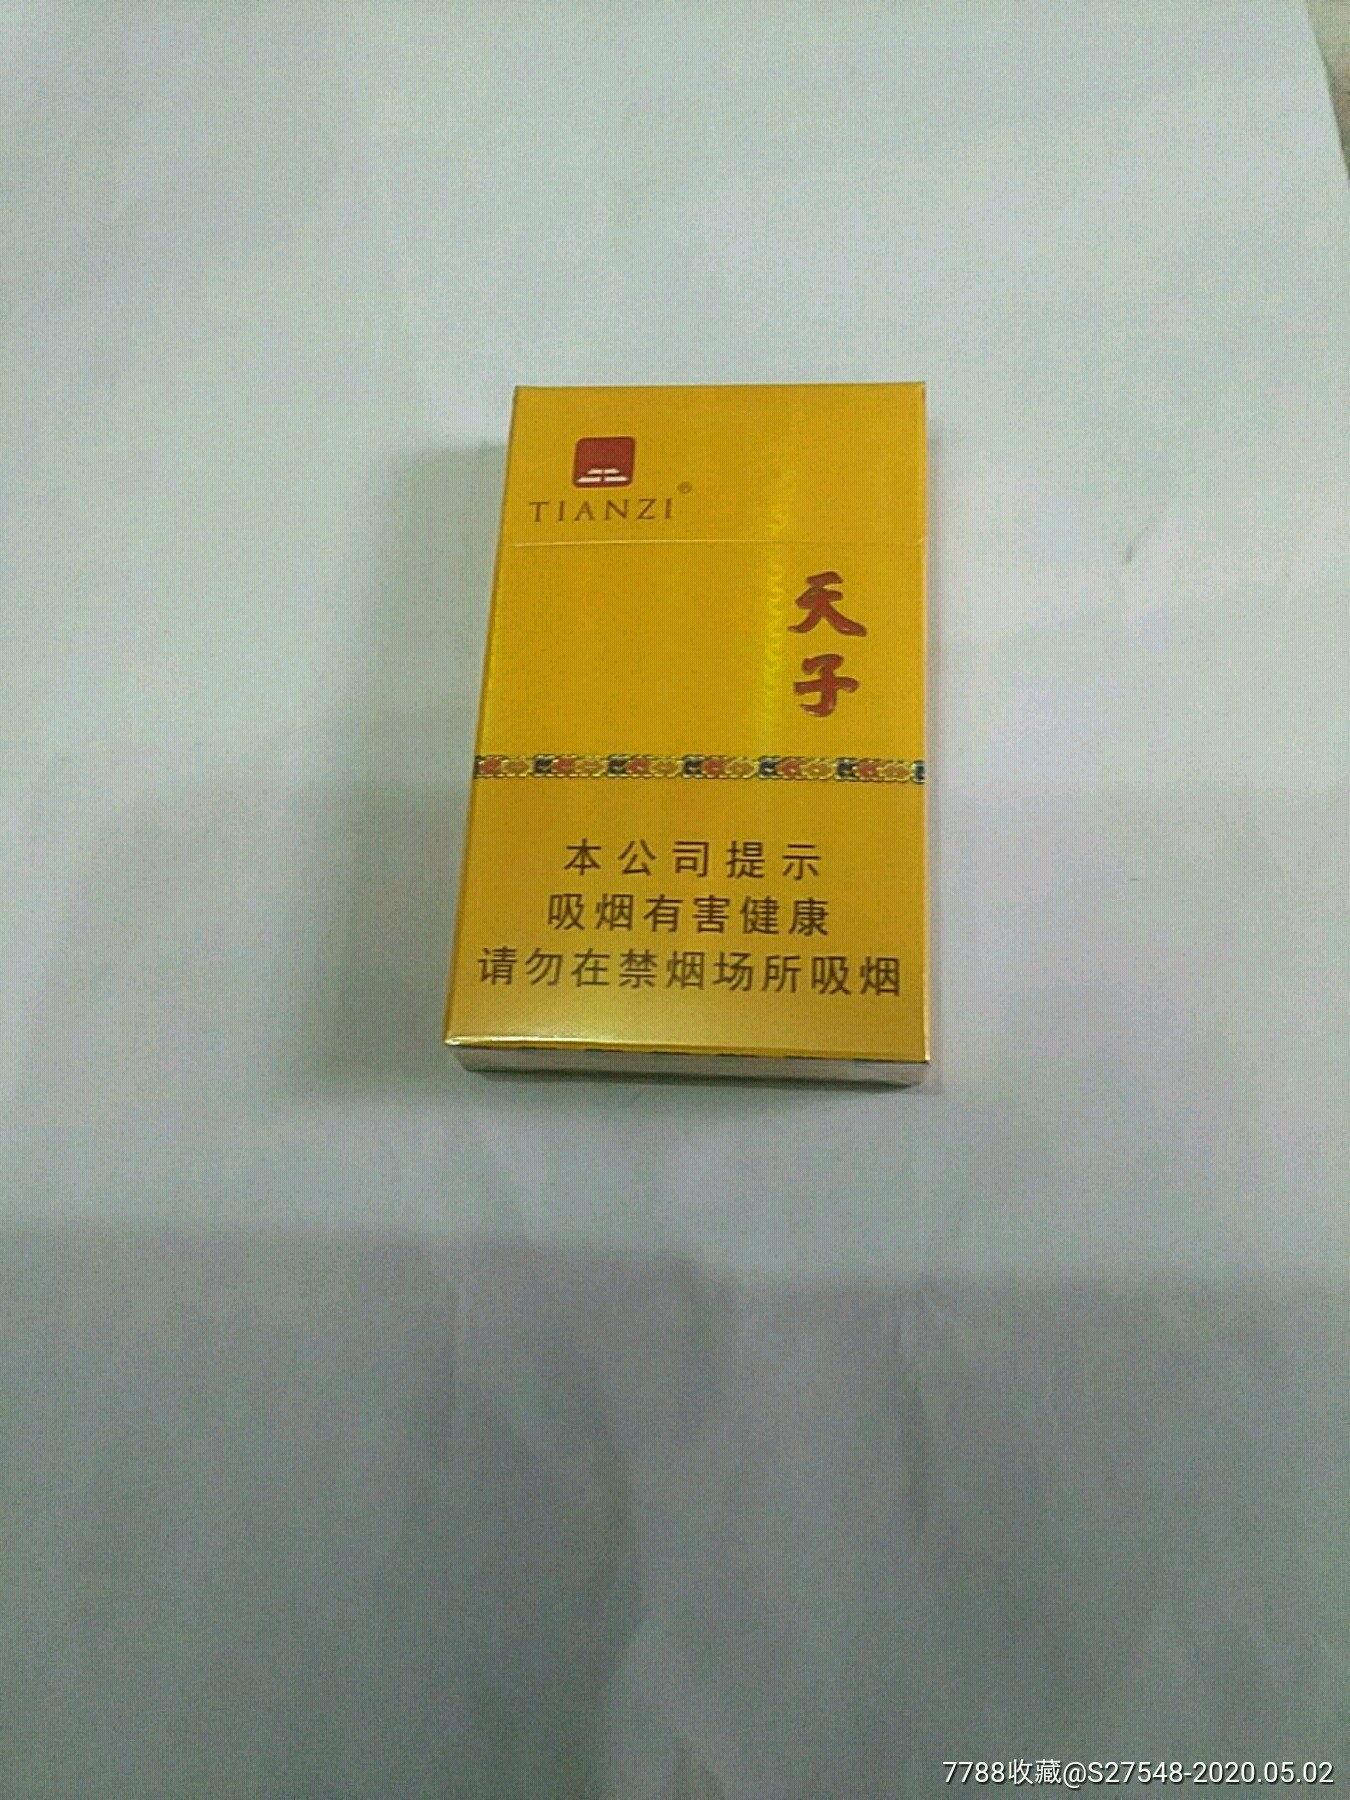 天子香烟横开盒图片